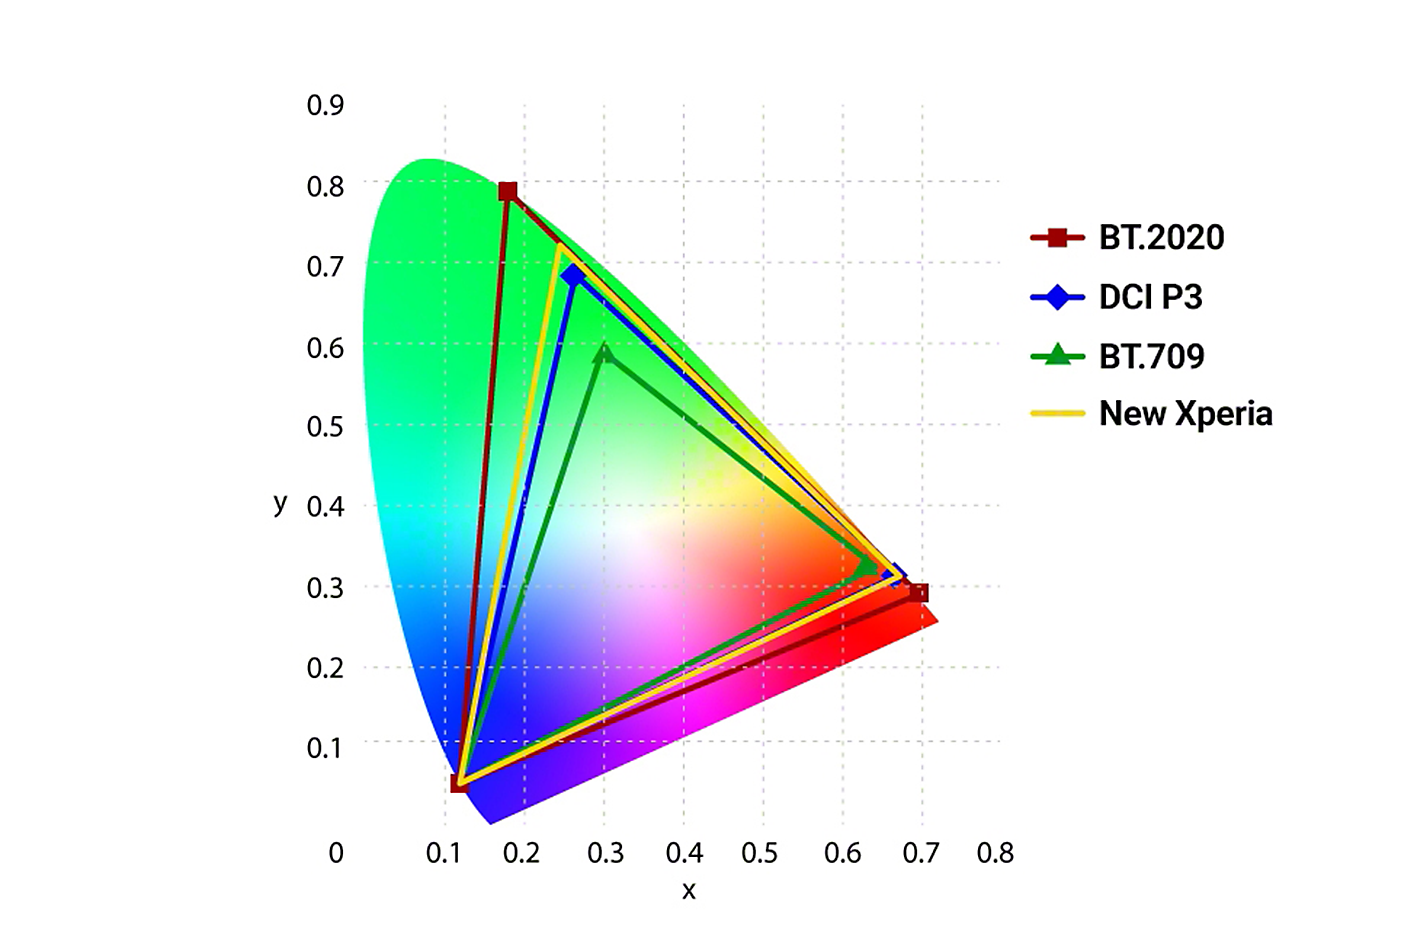 圖像裡比較 BT.2020、DCI P3、BT.709 及全新 Xperia 色彩精準度